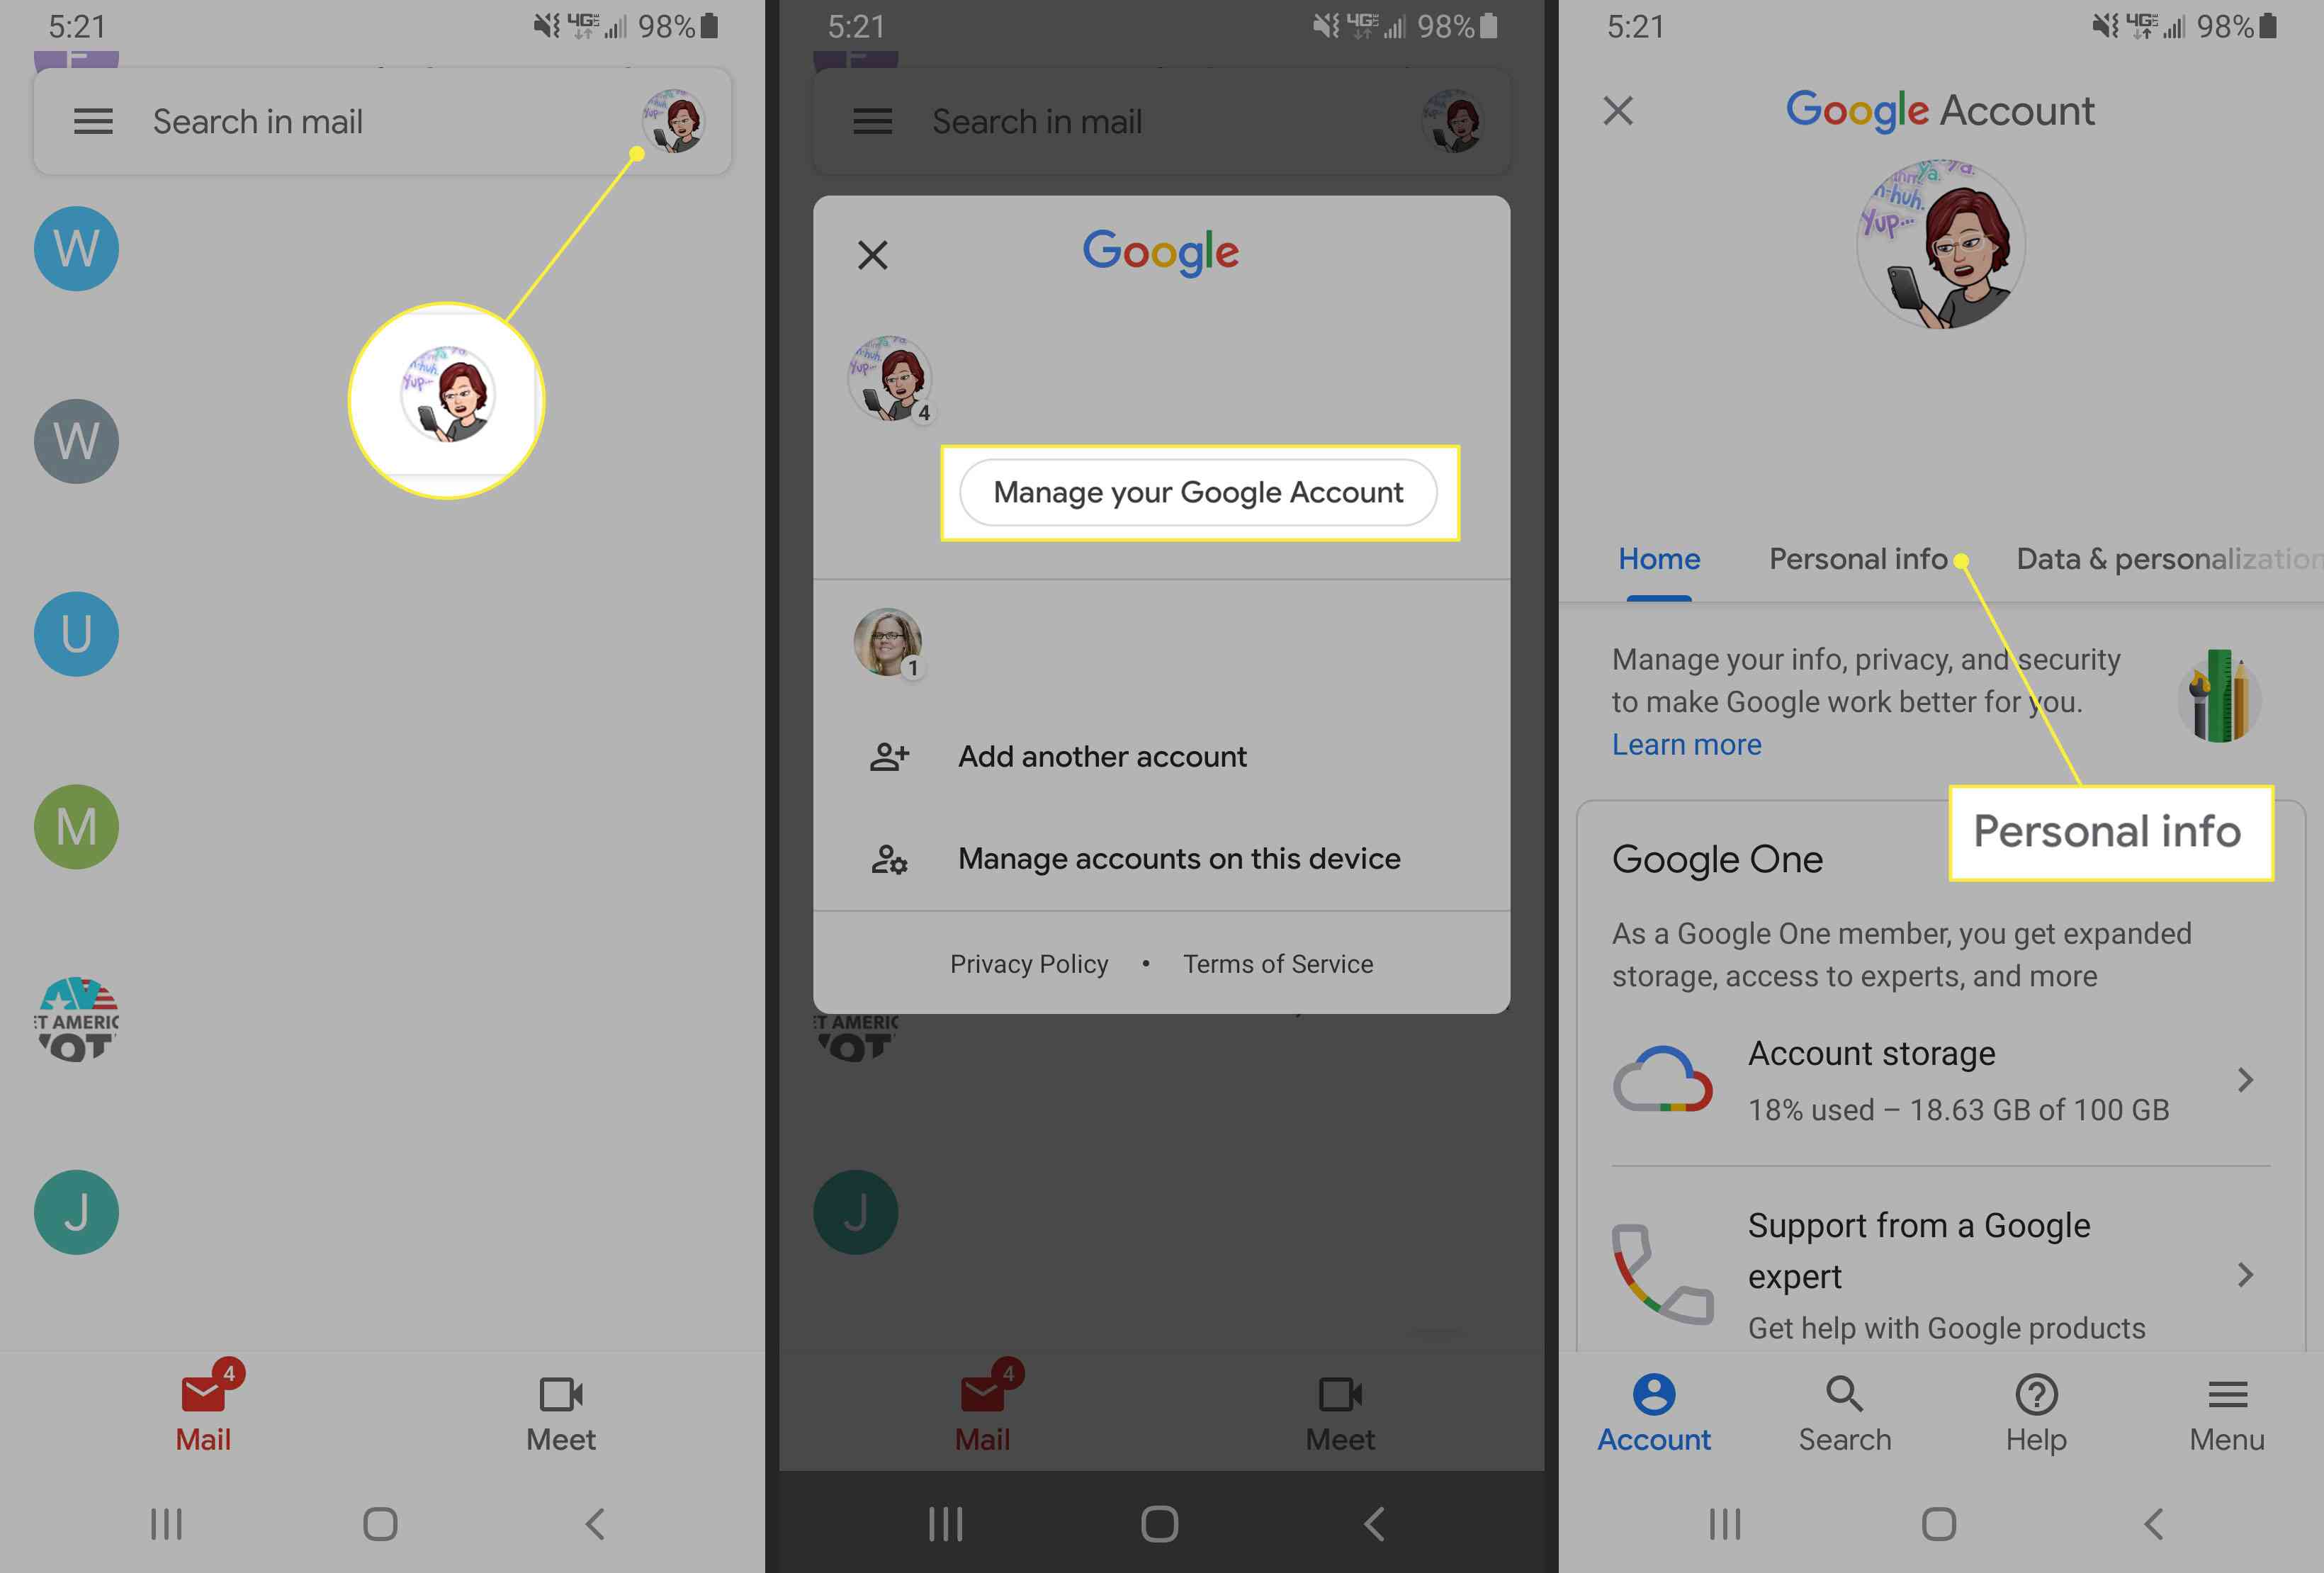 Správa účtu Google v aplikaci Gmail pro Android